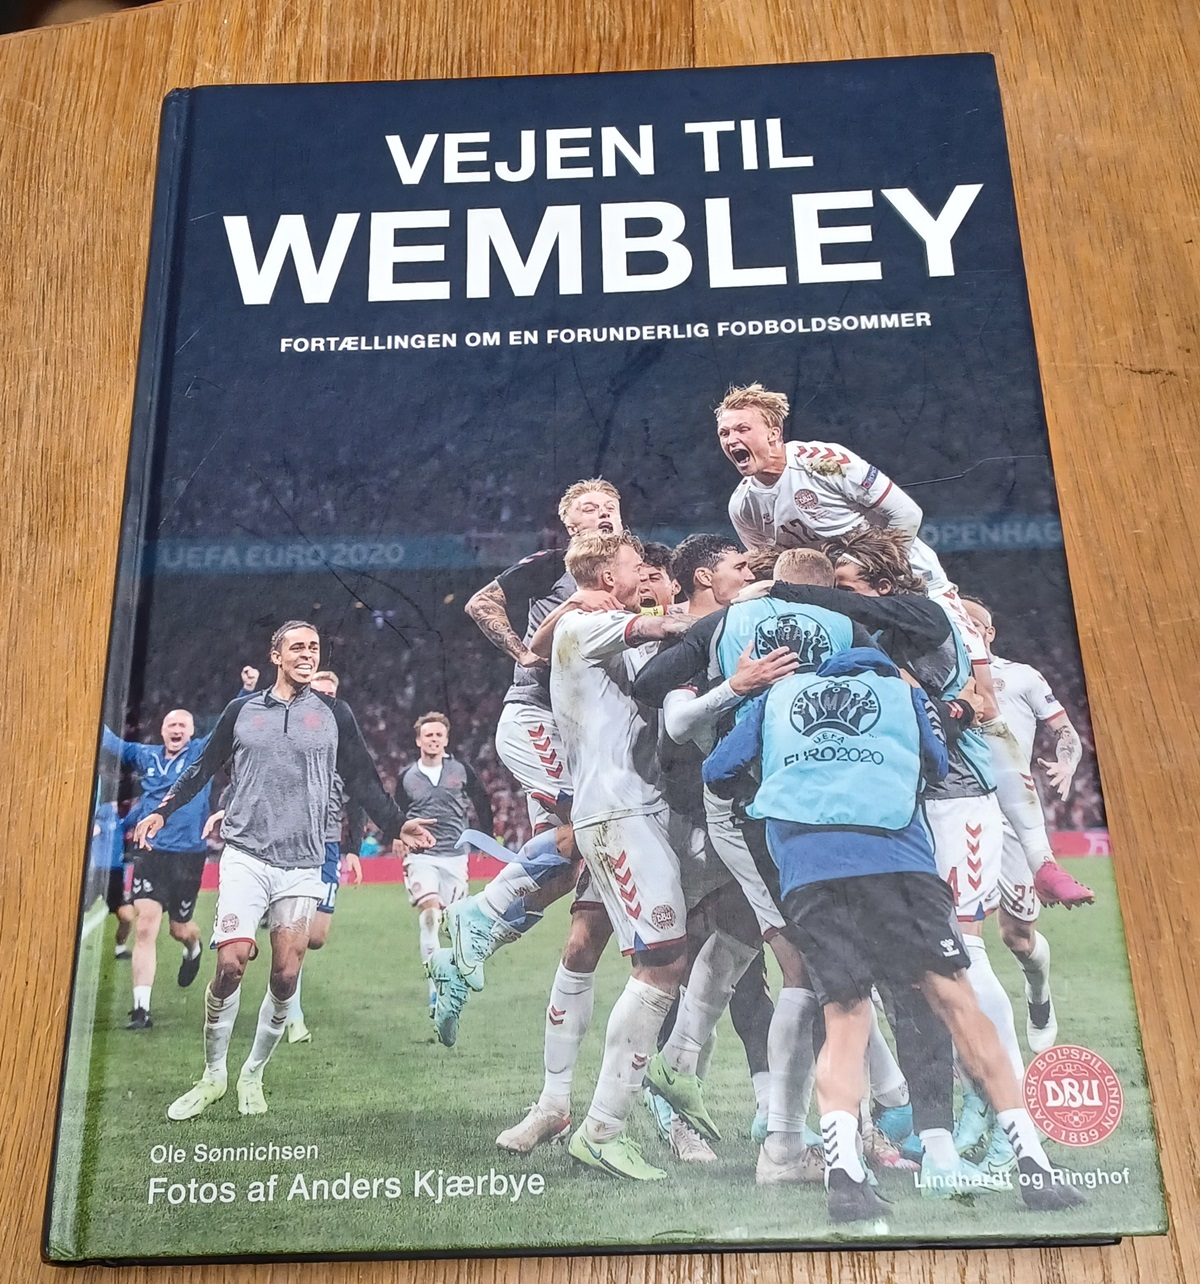 Vejen til Wembley